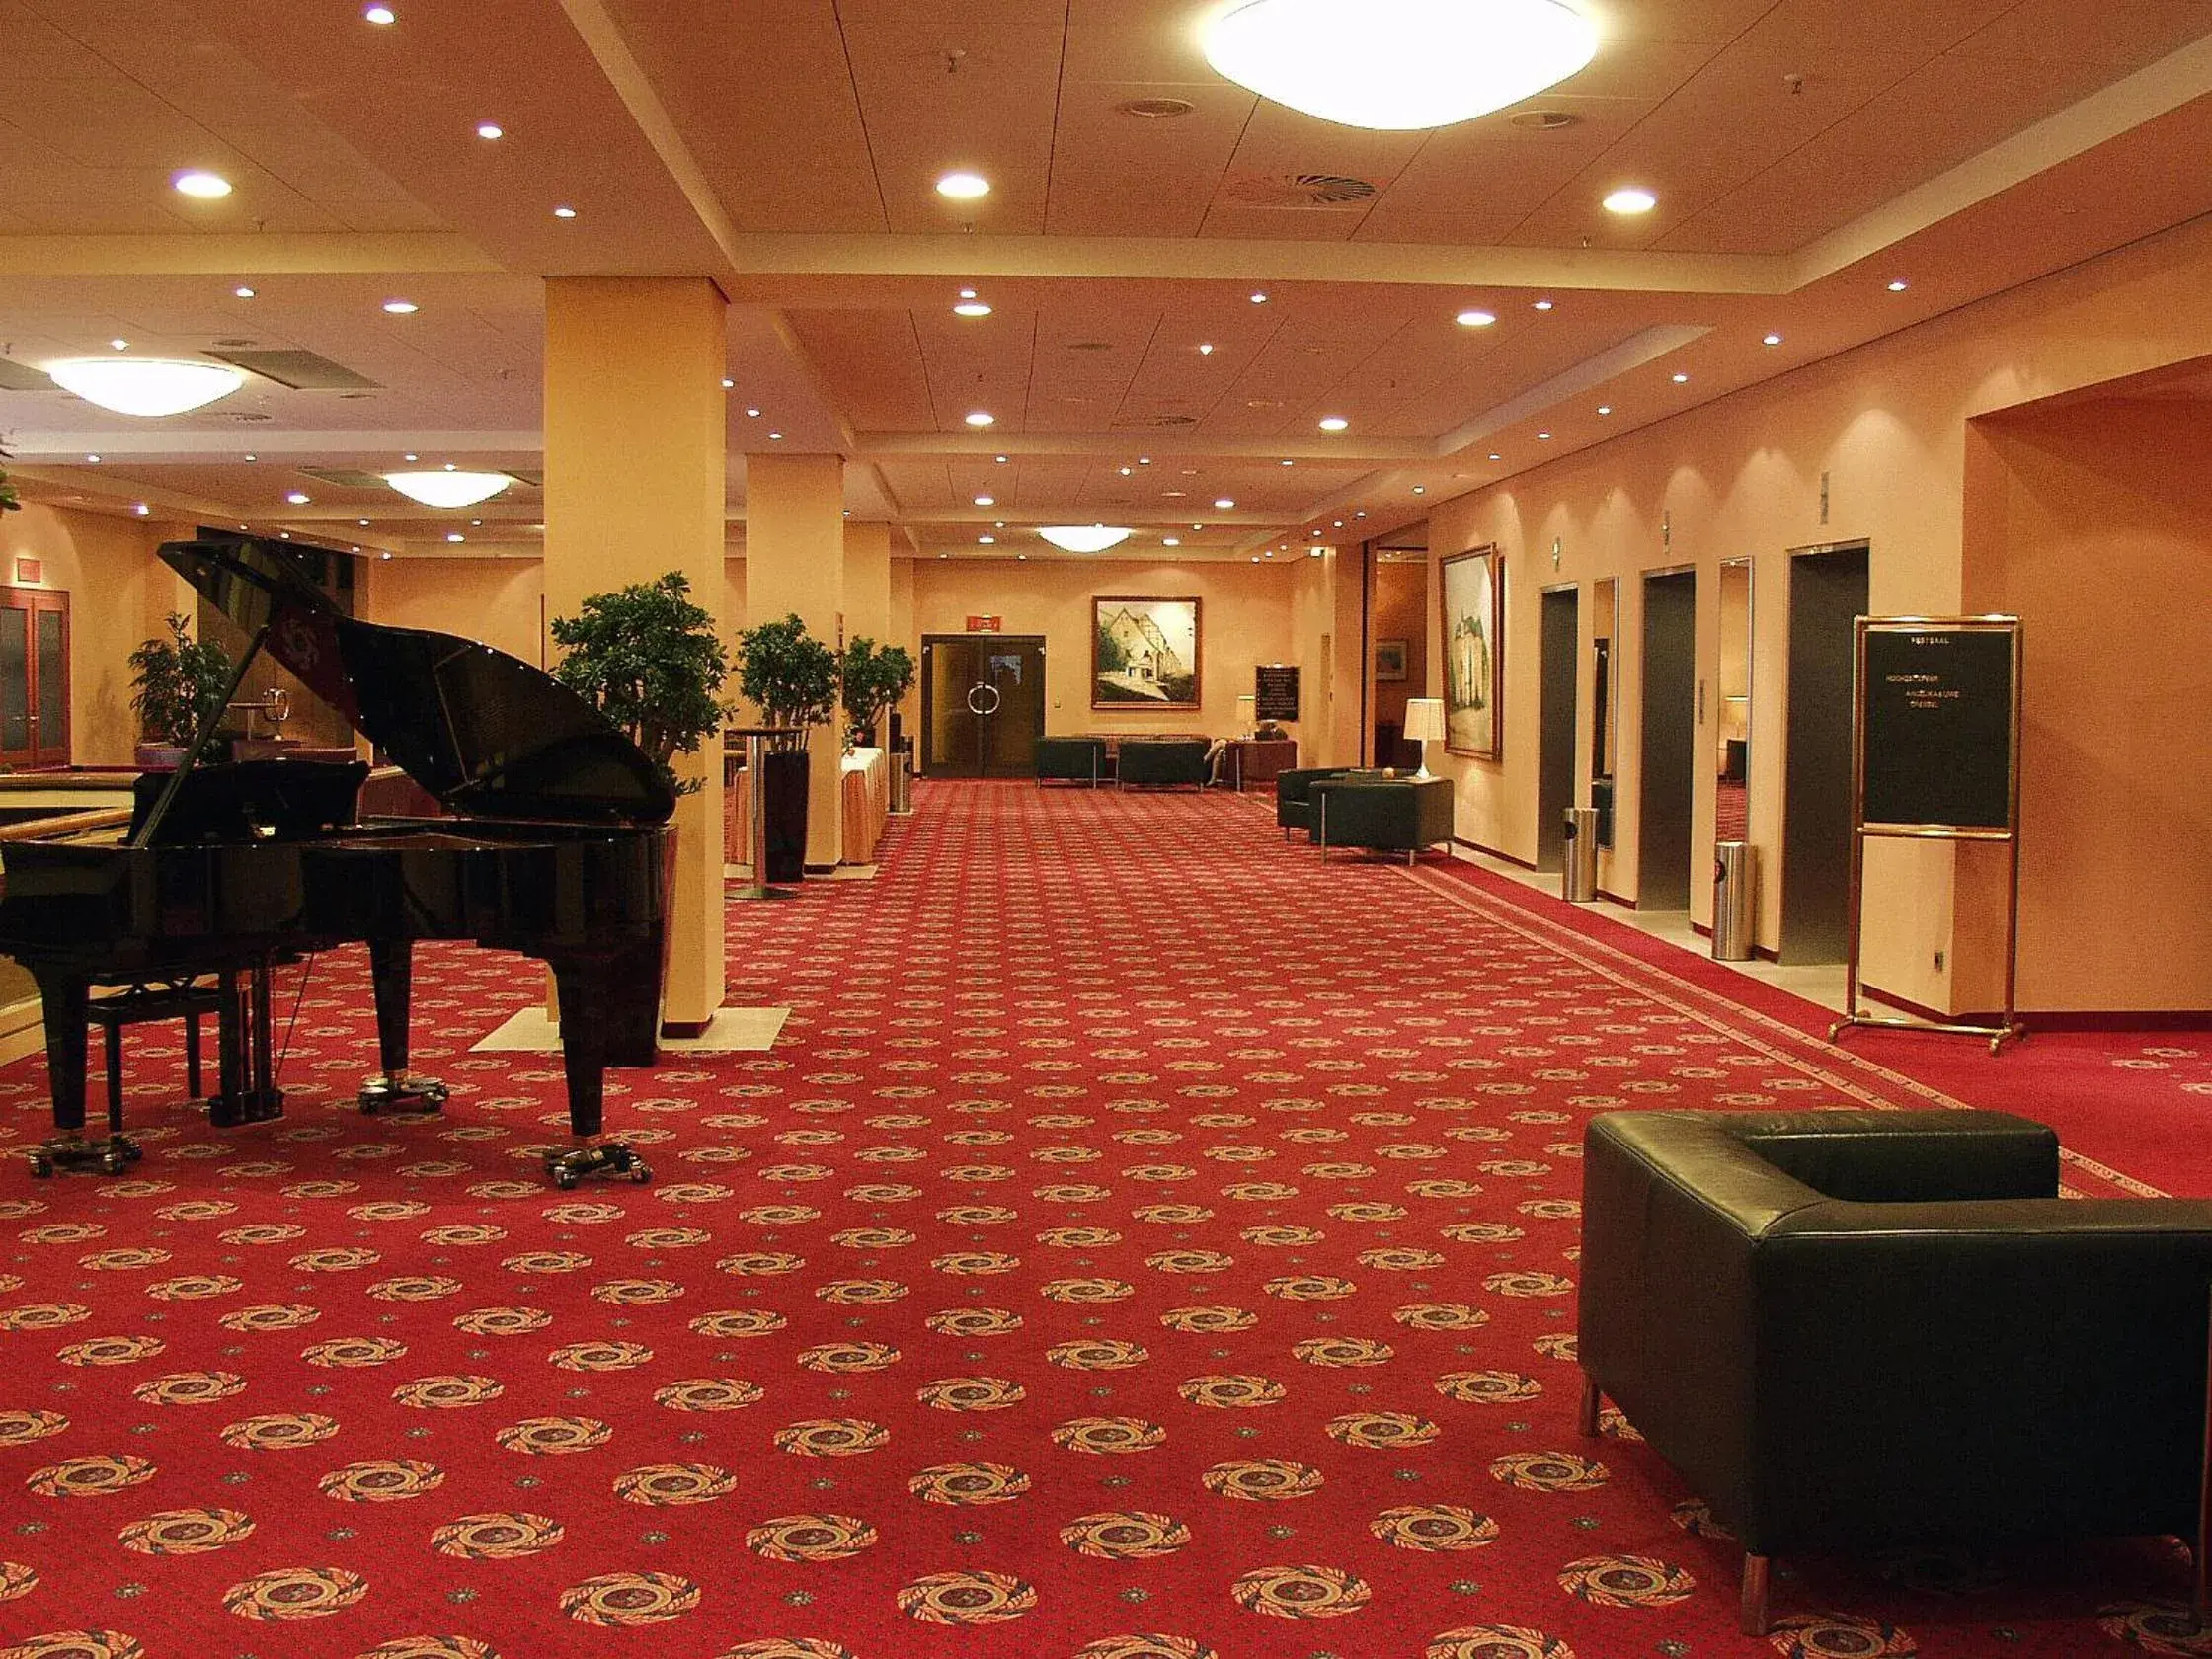 Lobby or reception in Hotel Steglitz International